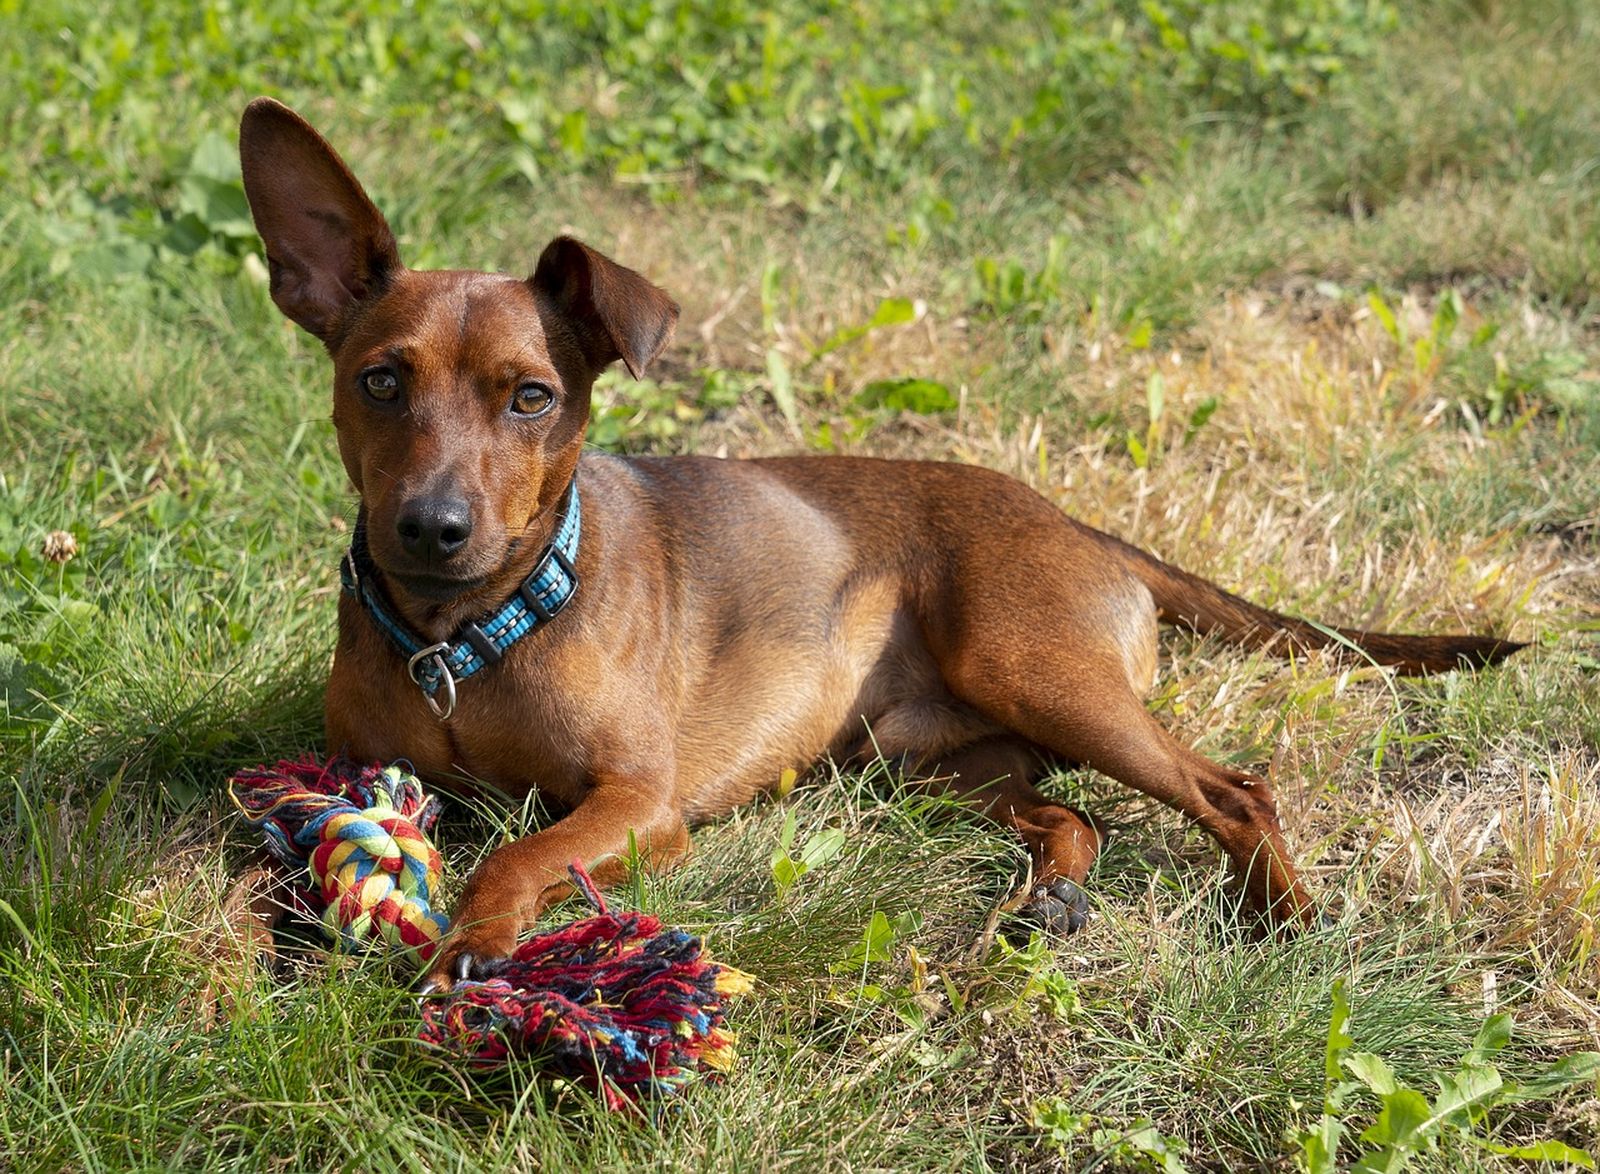 Ein rotbrauner Zwergpinscher Hund mit einem blauen Halsband liegt auf der Wiese mit einem Spielgerät und schaut konzentriert den Betrachter an